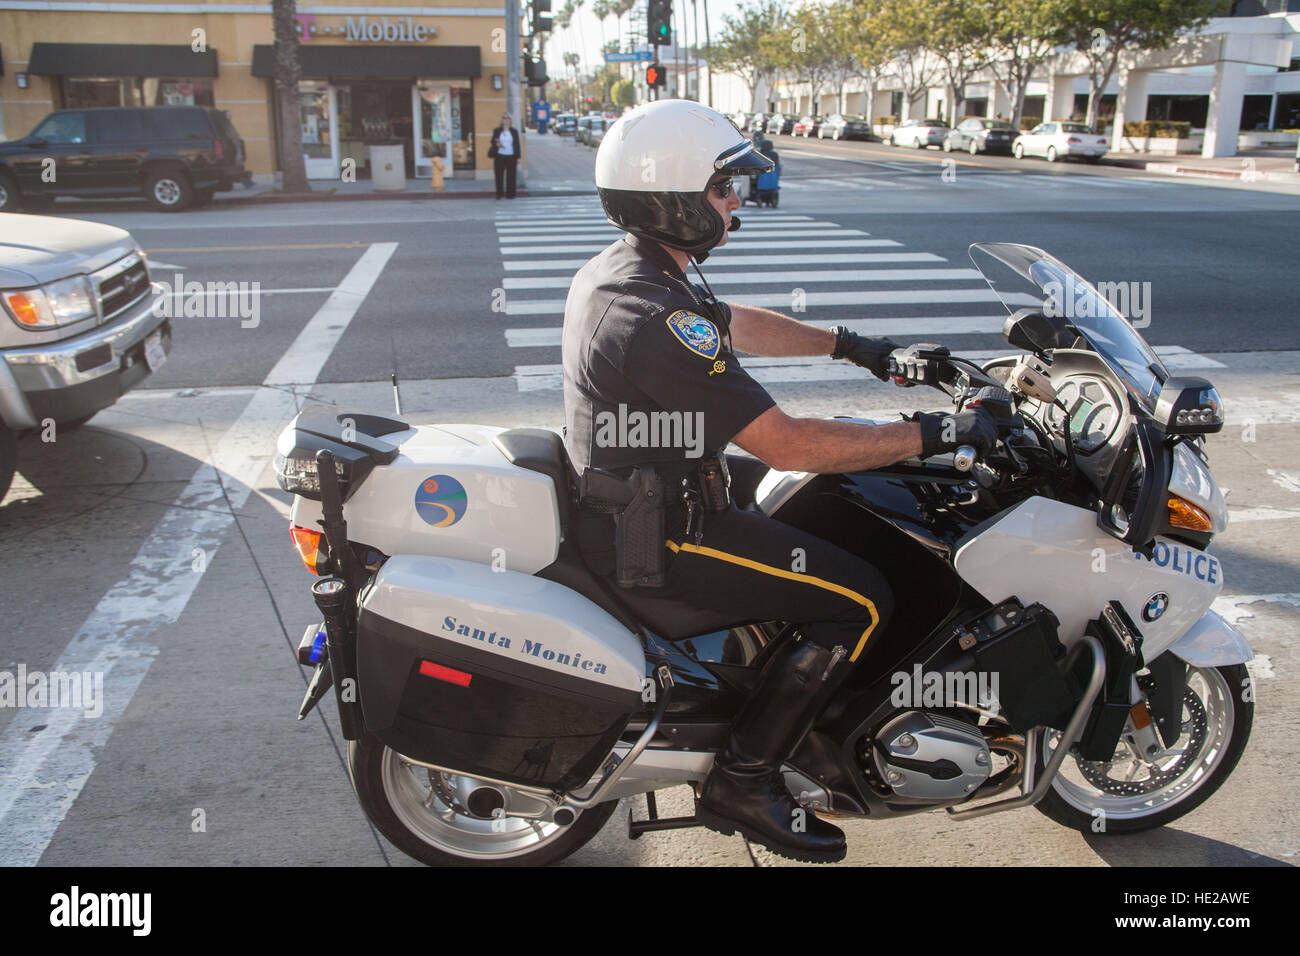 LAPD. Los Angeles Polizei Department.Police Mann Offizier auf dem Motorrad unterwegs in Santa Monica, Los Angeles,L.A., California, USA, Vereinigte Staaten von Amerika. Stockfoto